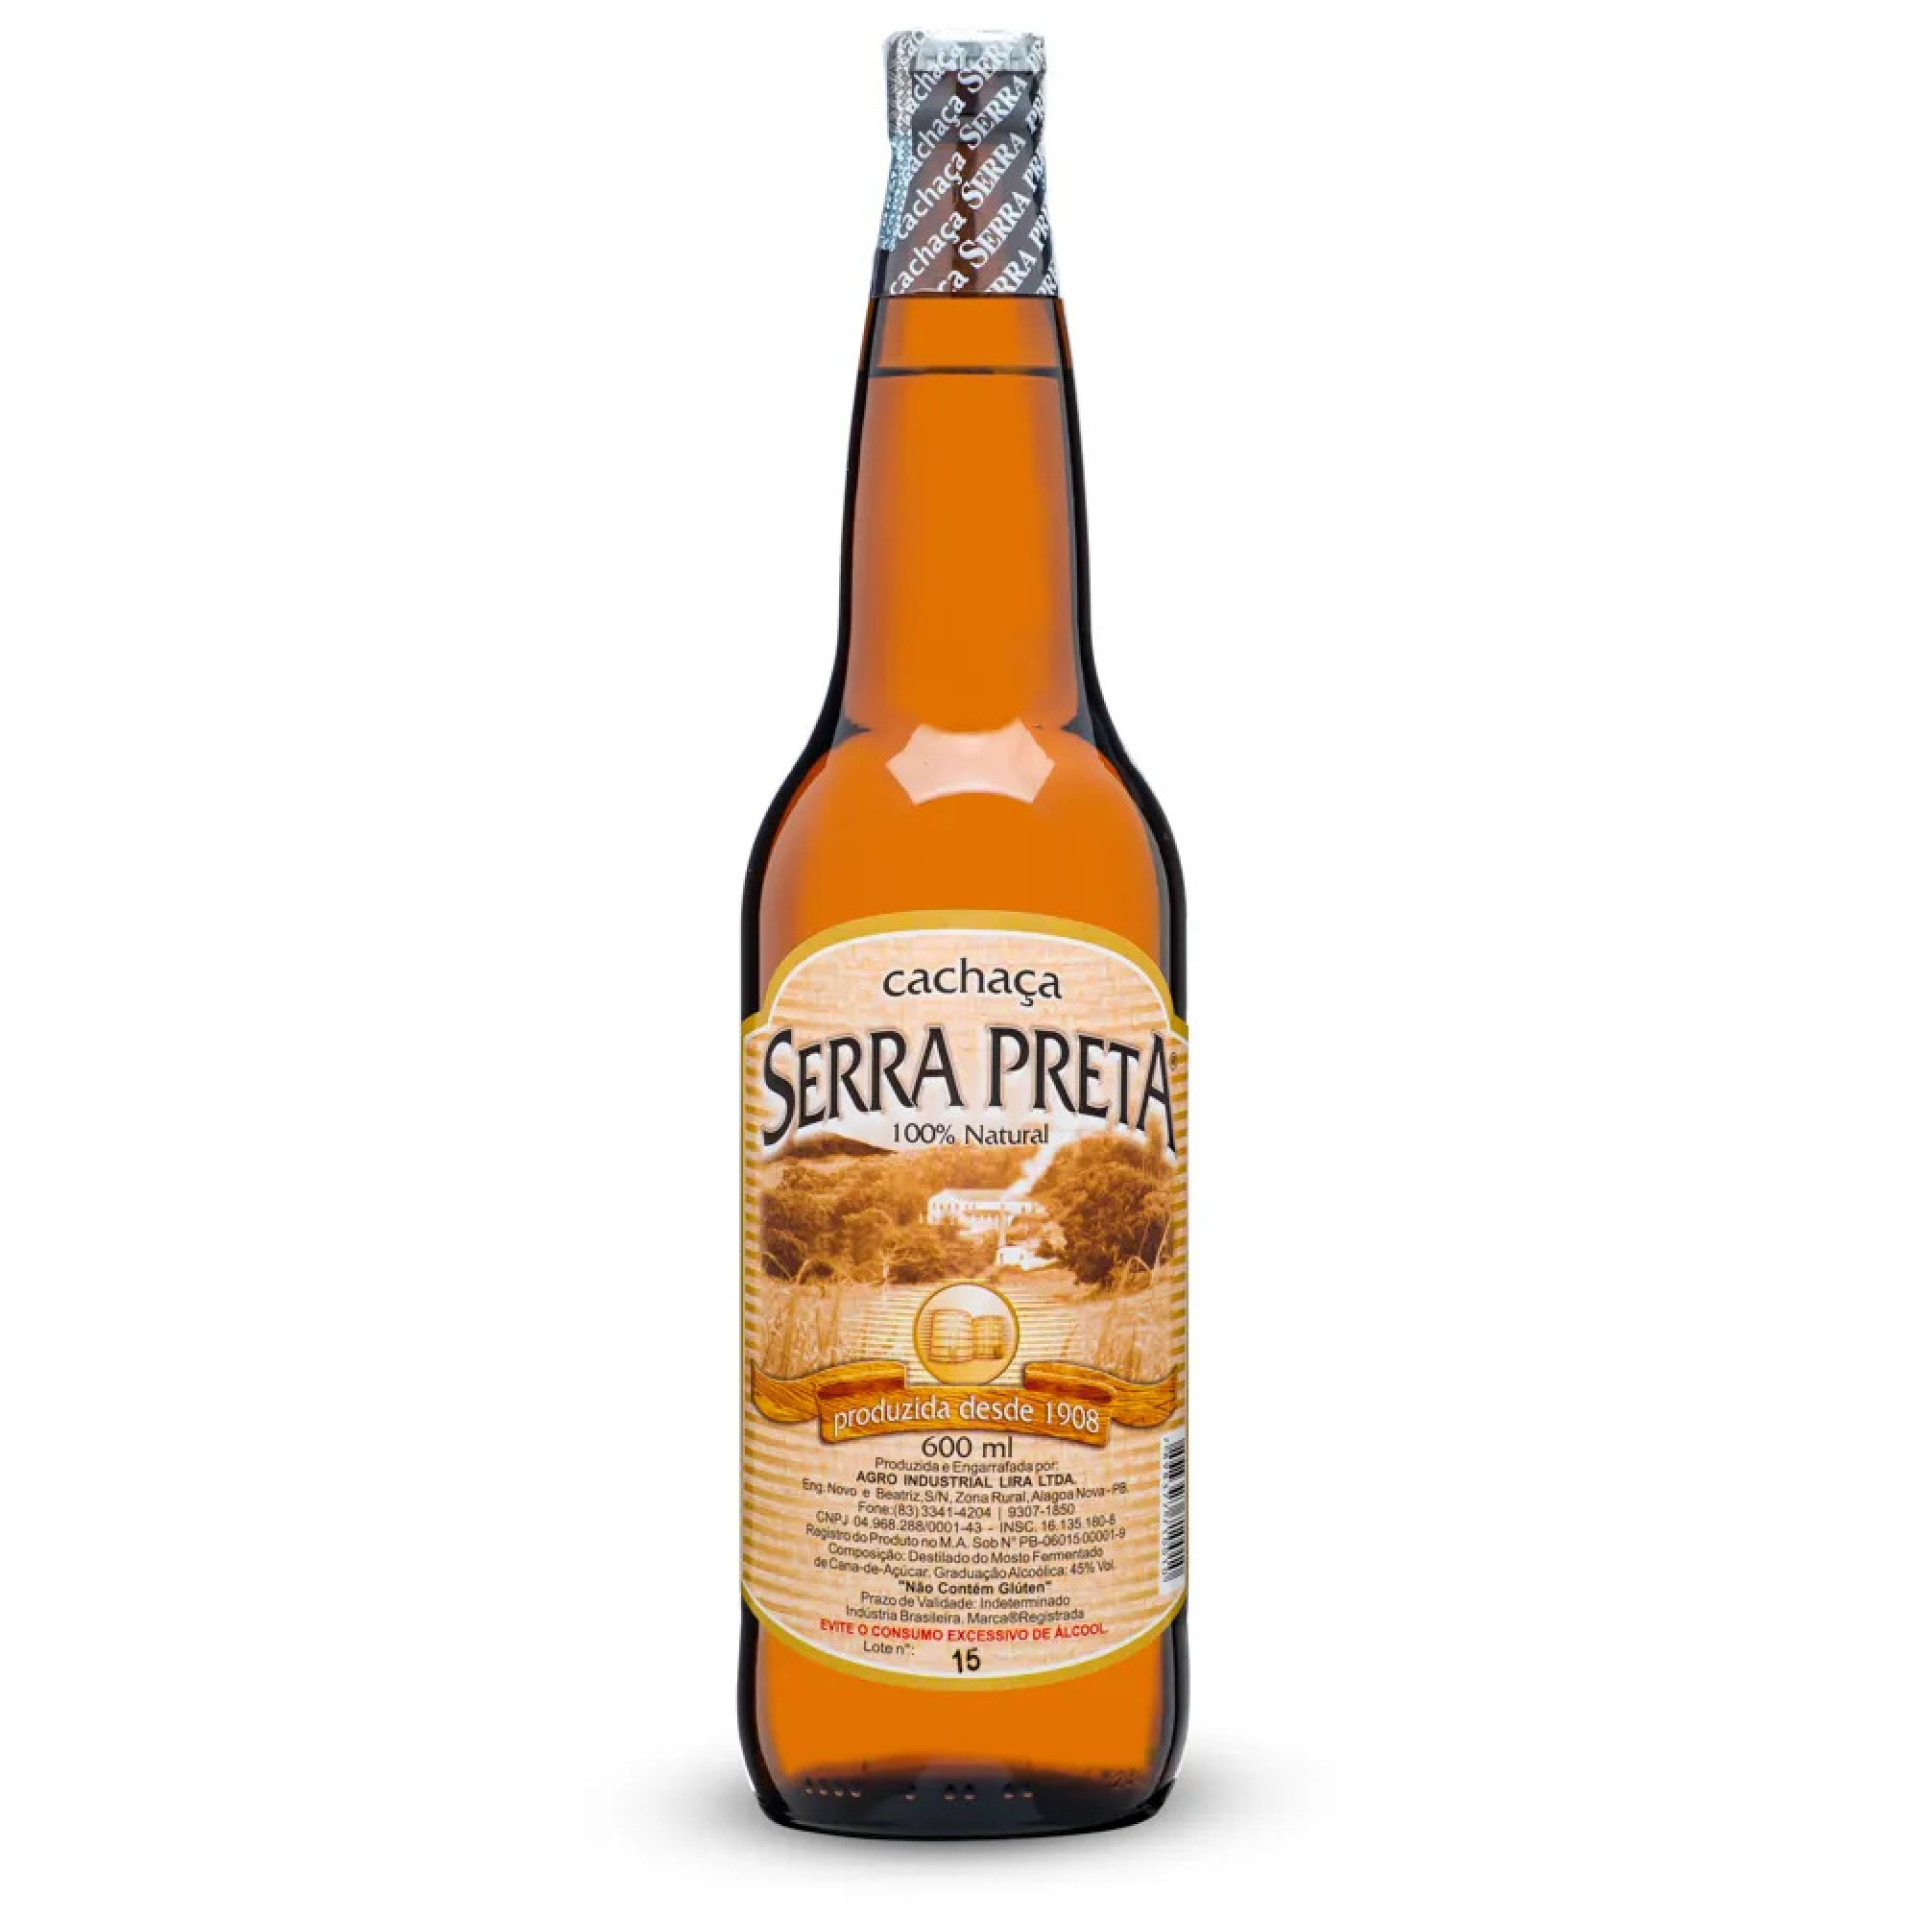 Cachaça paraibana Serra Preta, de Alagoa Nova, é uma boa opção para drinks